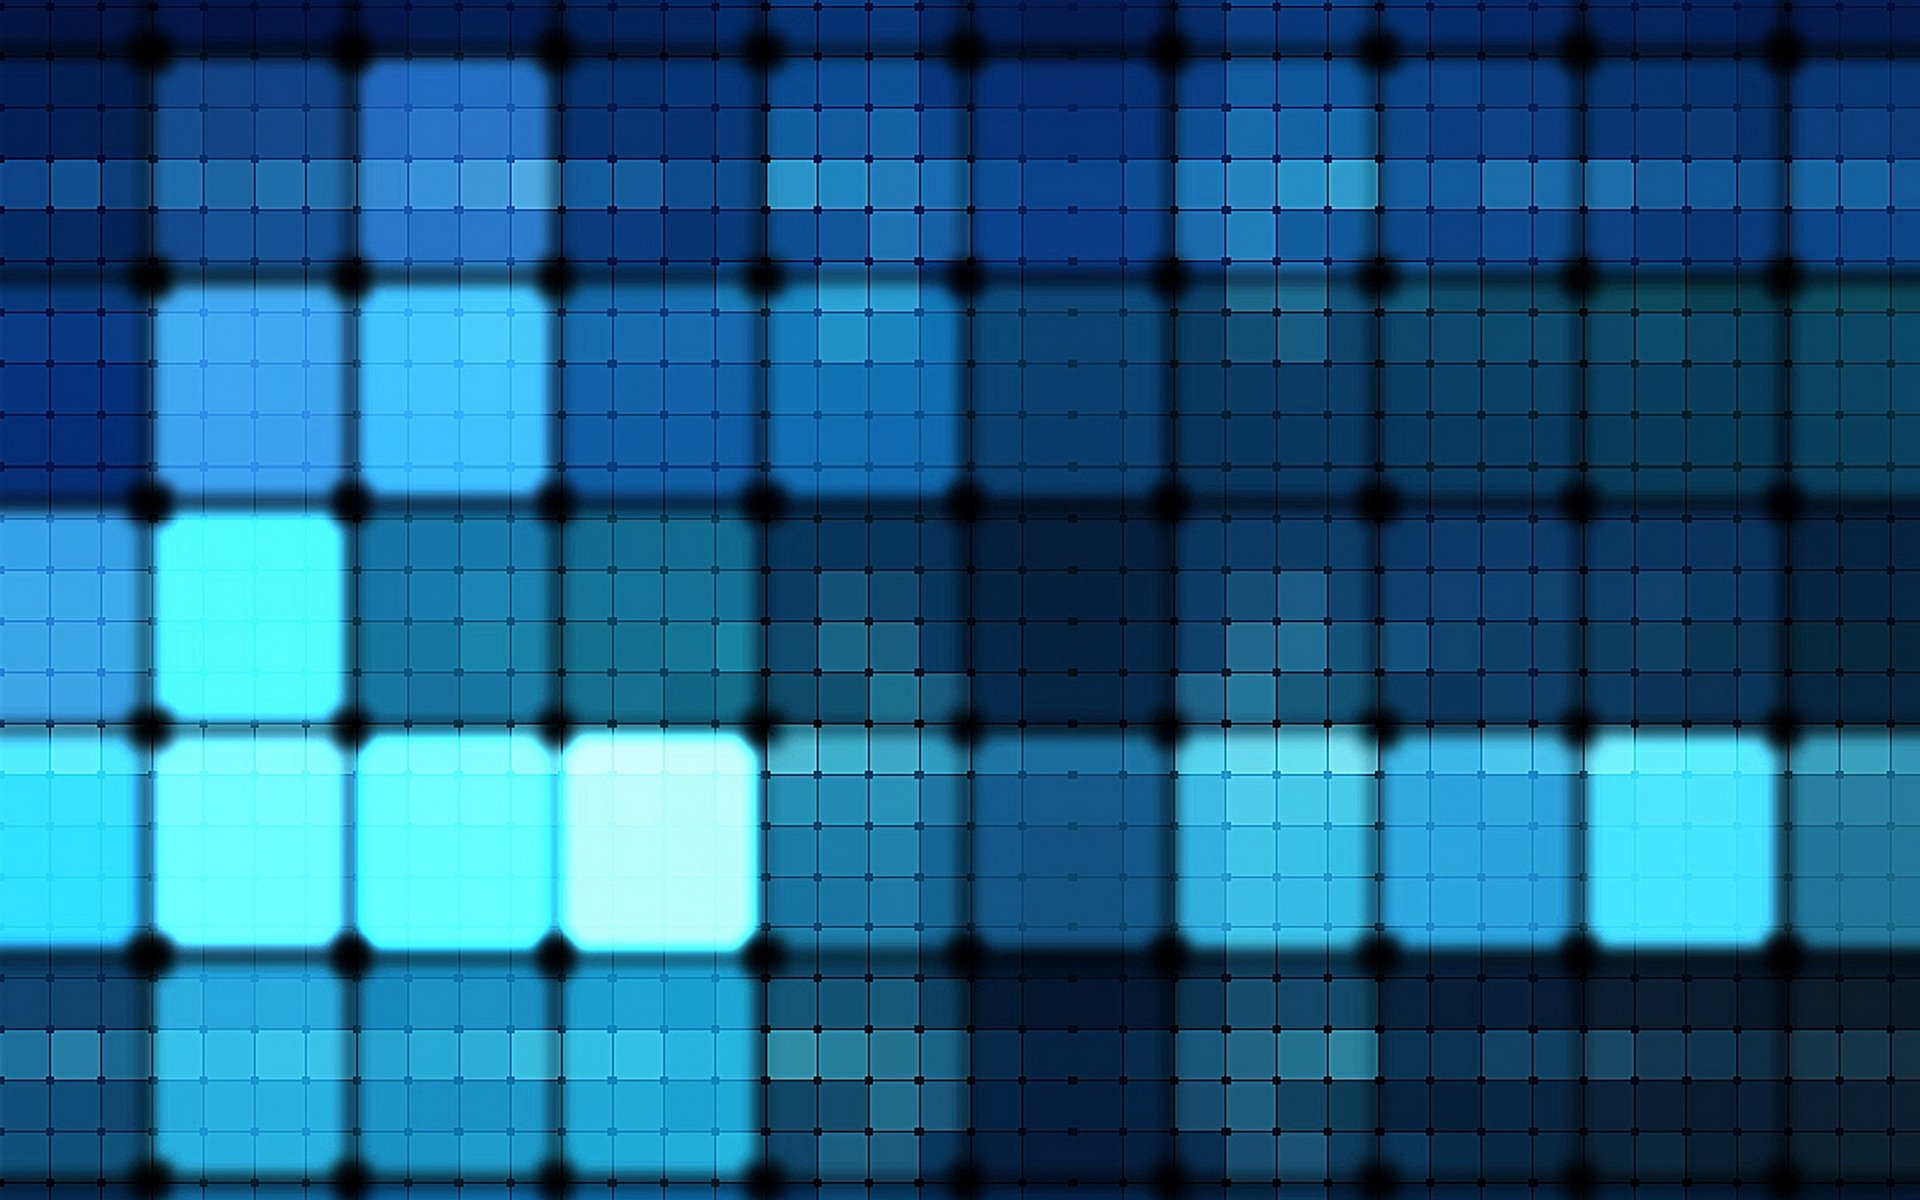 Песни квадратики. Фон из квадратиков. Синий фон квадратики. Обои квадраты. Фон синий абстракция с квадратами.